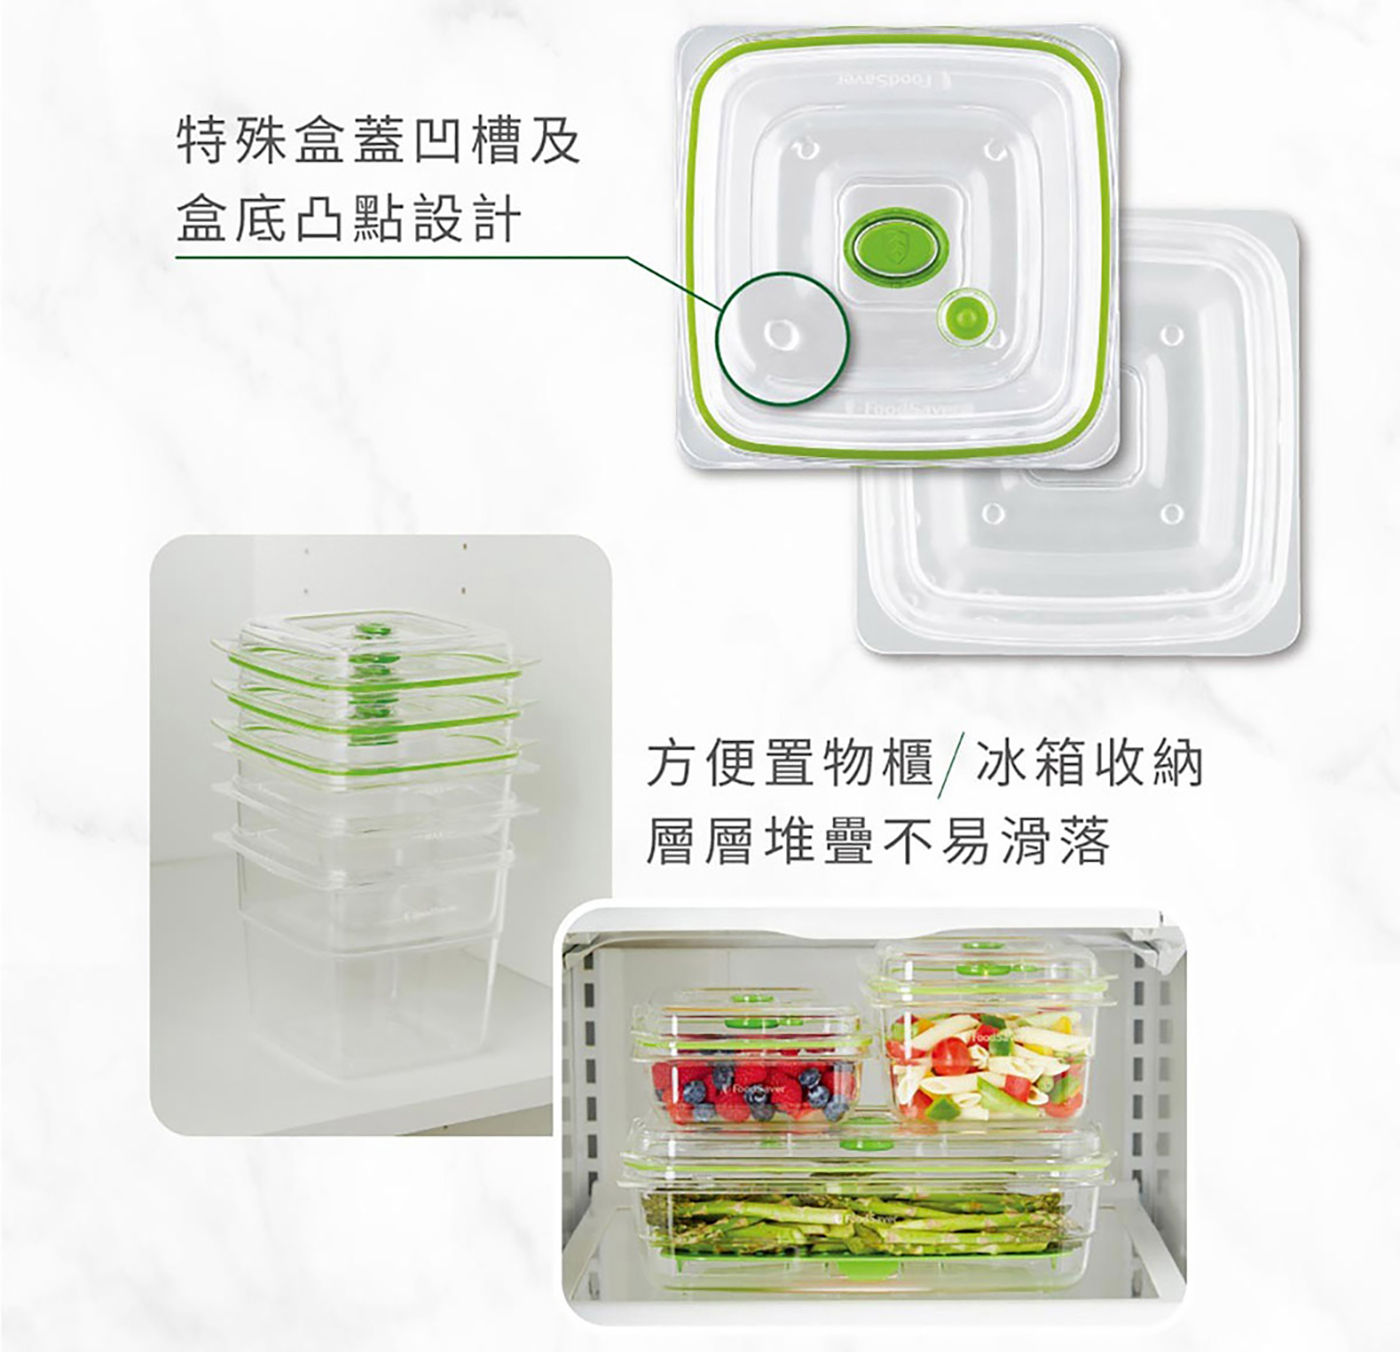 Foodsaver 真空密鮮盒 特殊盒蓋凹槽及盒底凸點設計